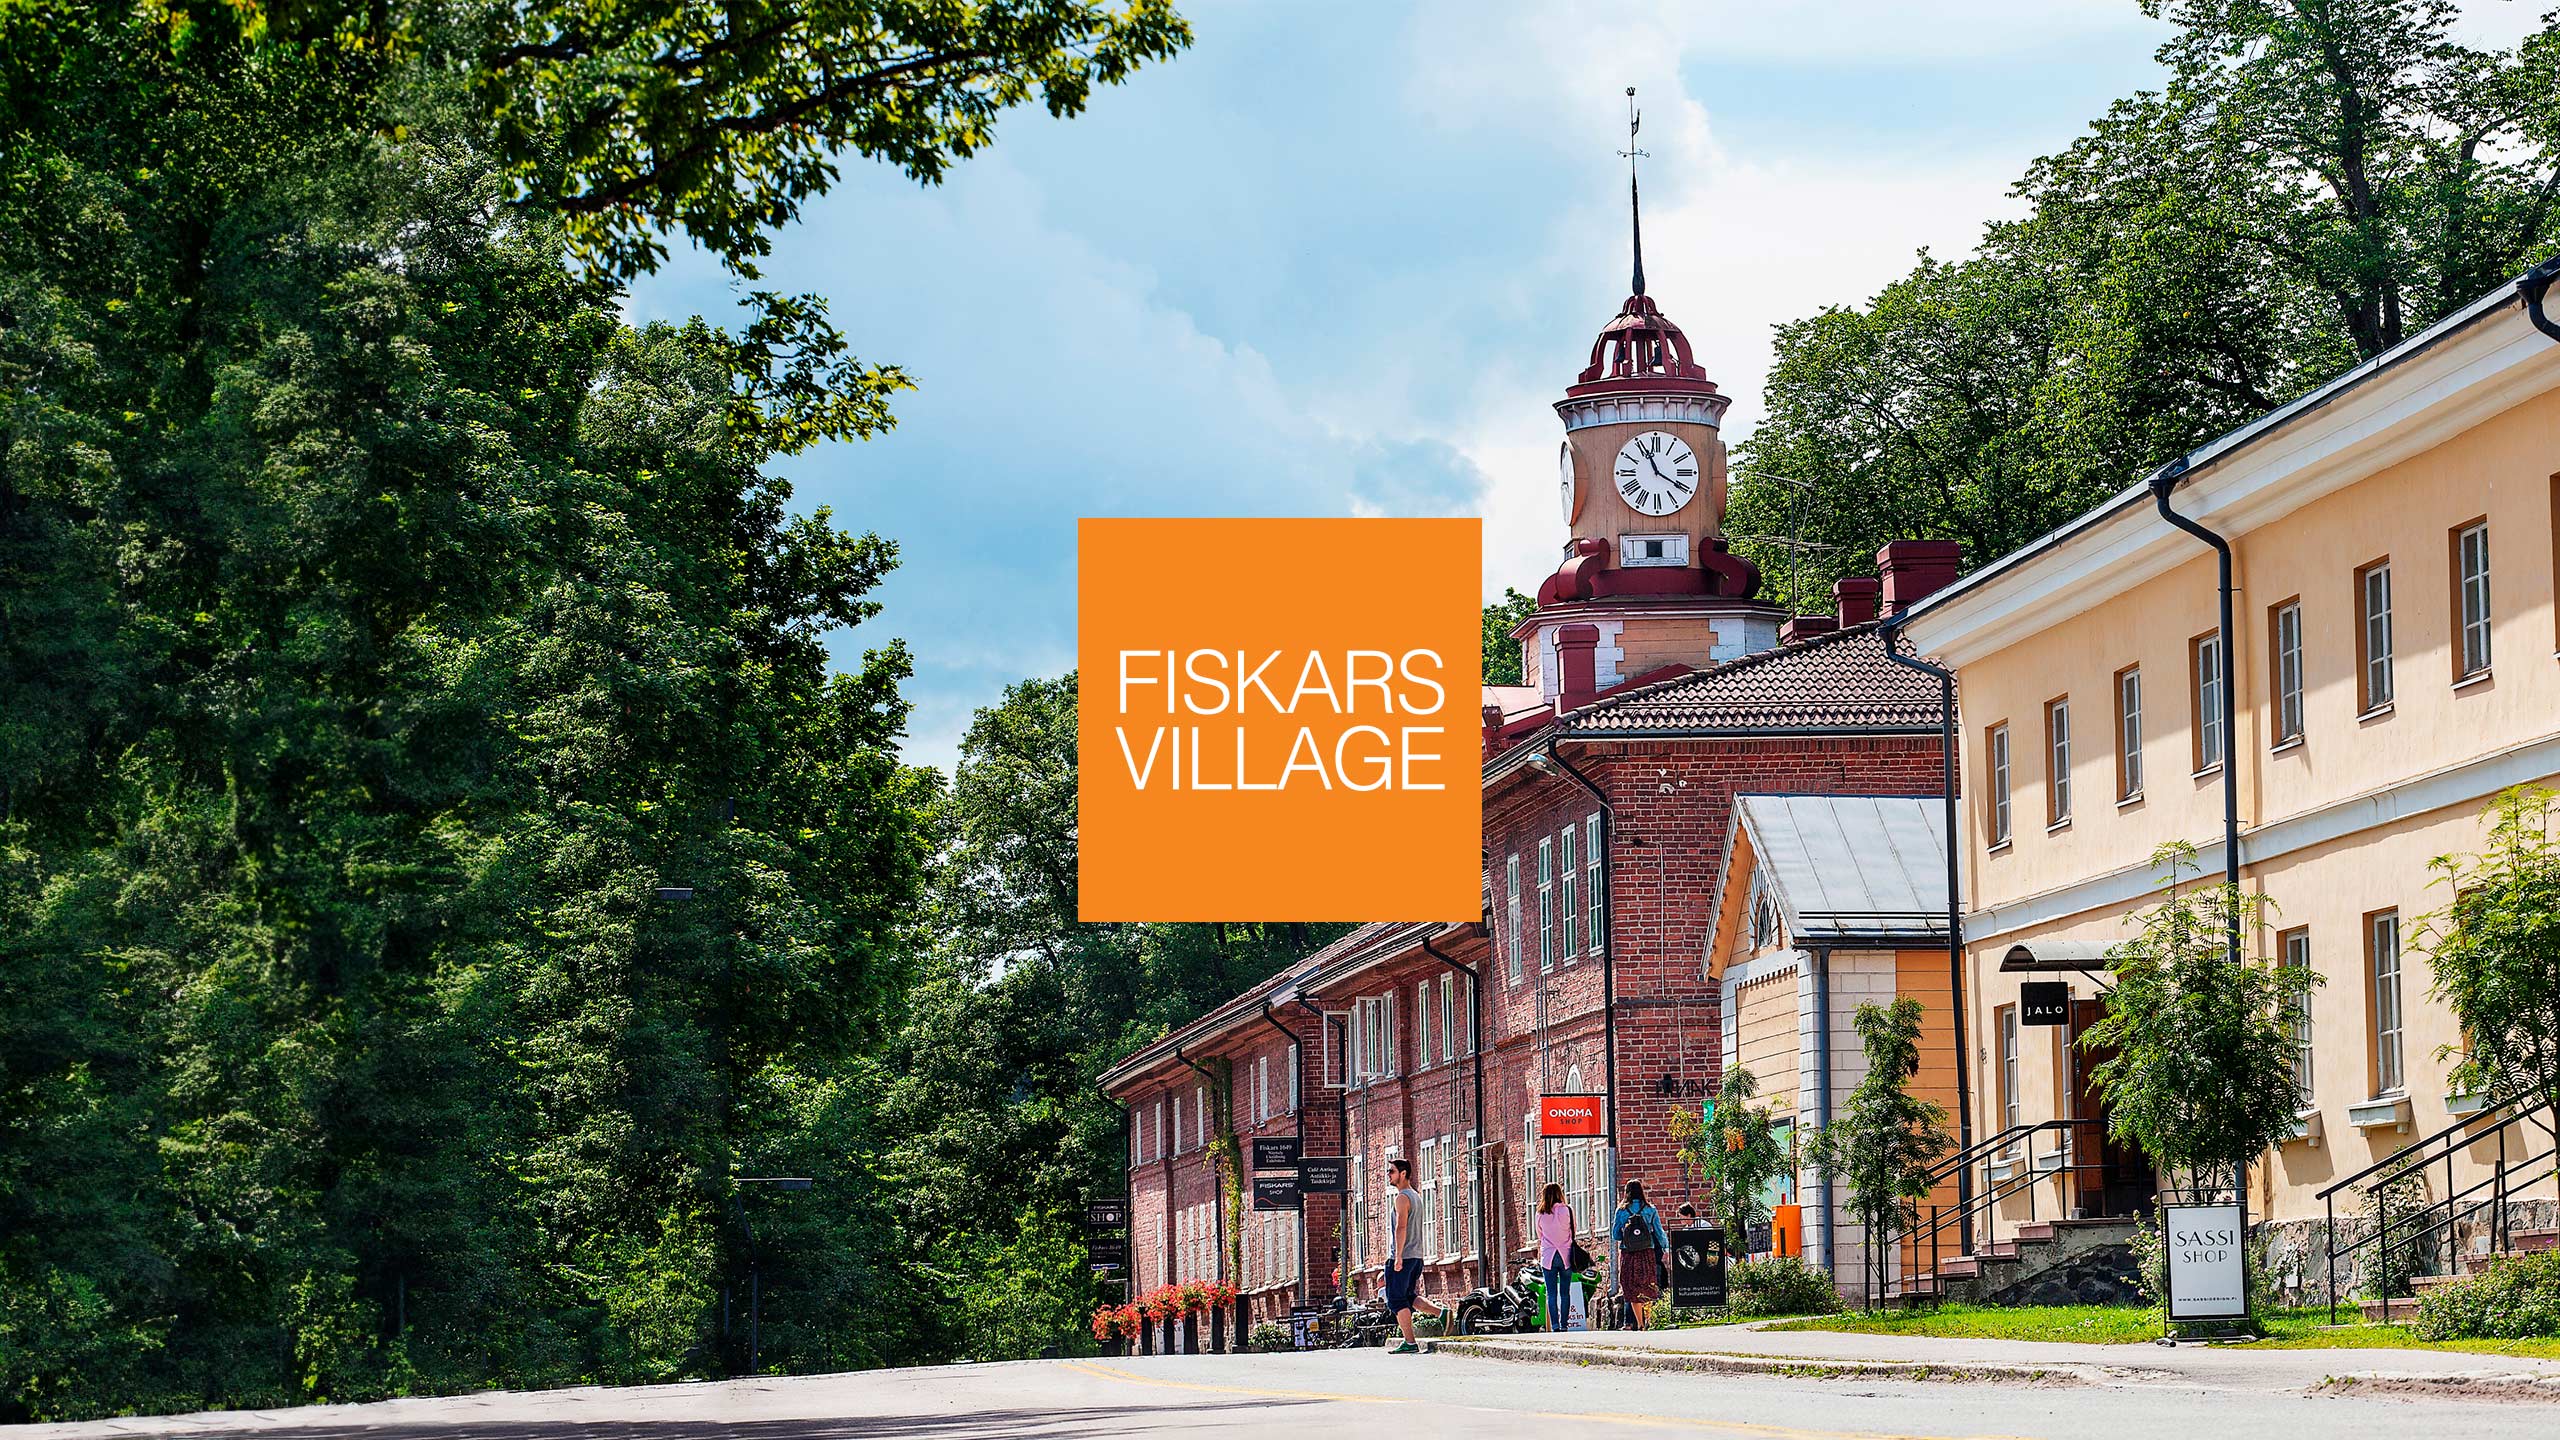 Fiskars Village